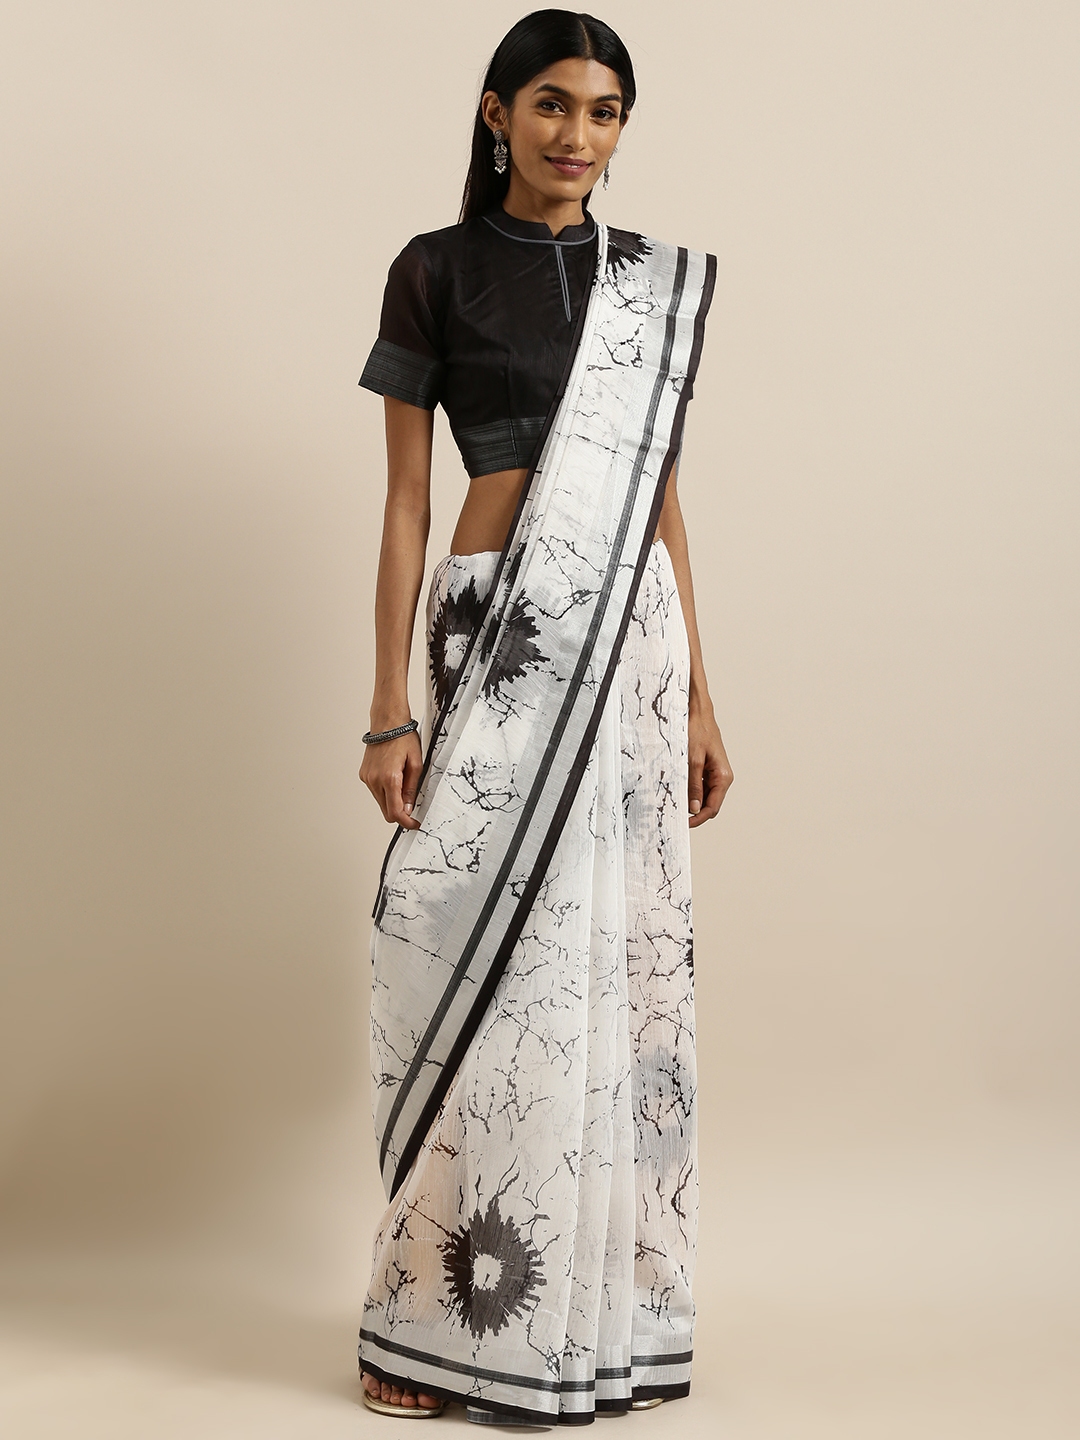 23 Short haired women in sarees ideas  saree designs saree saree look